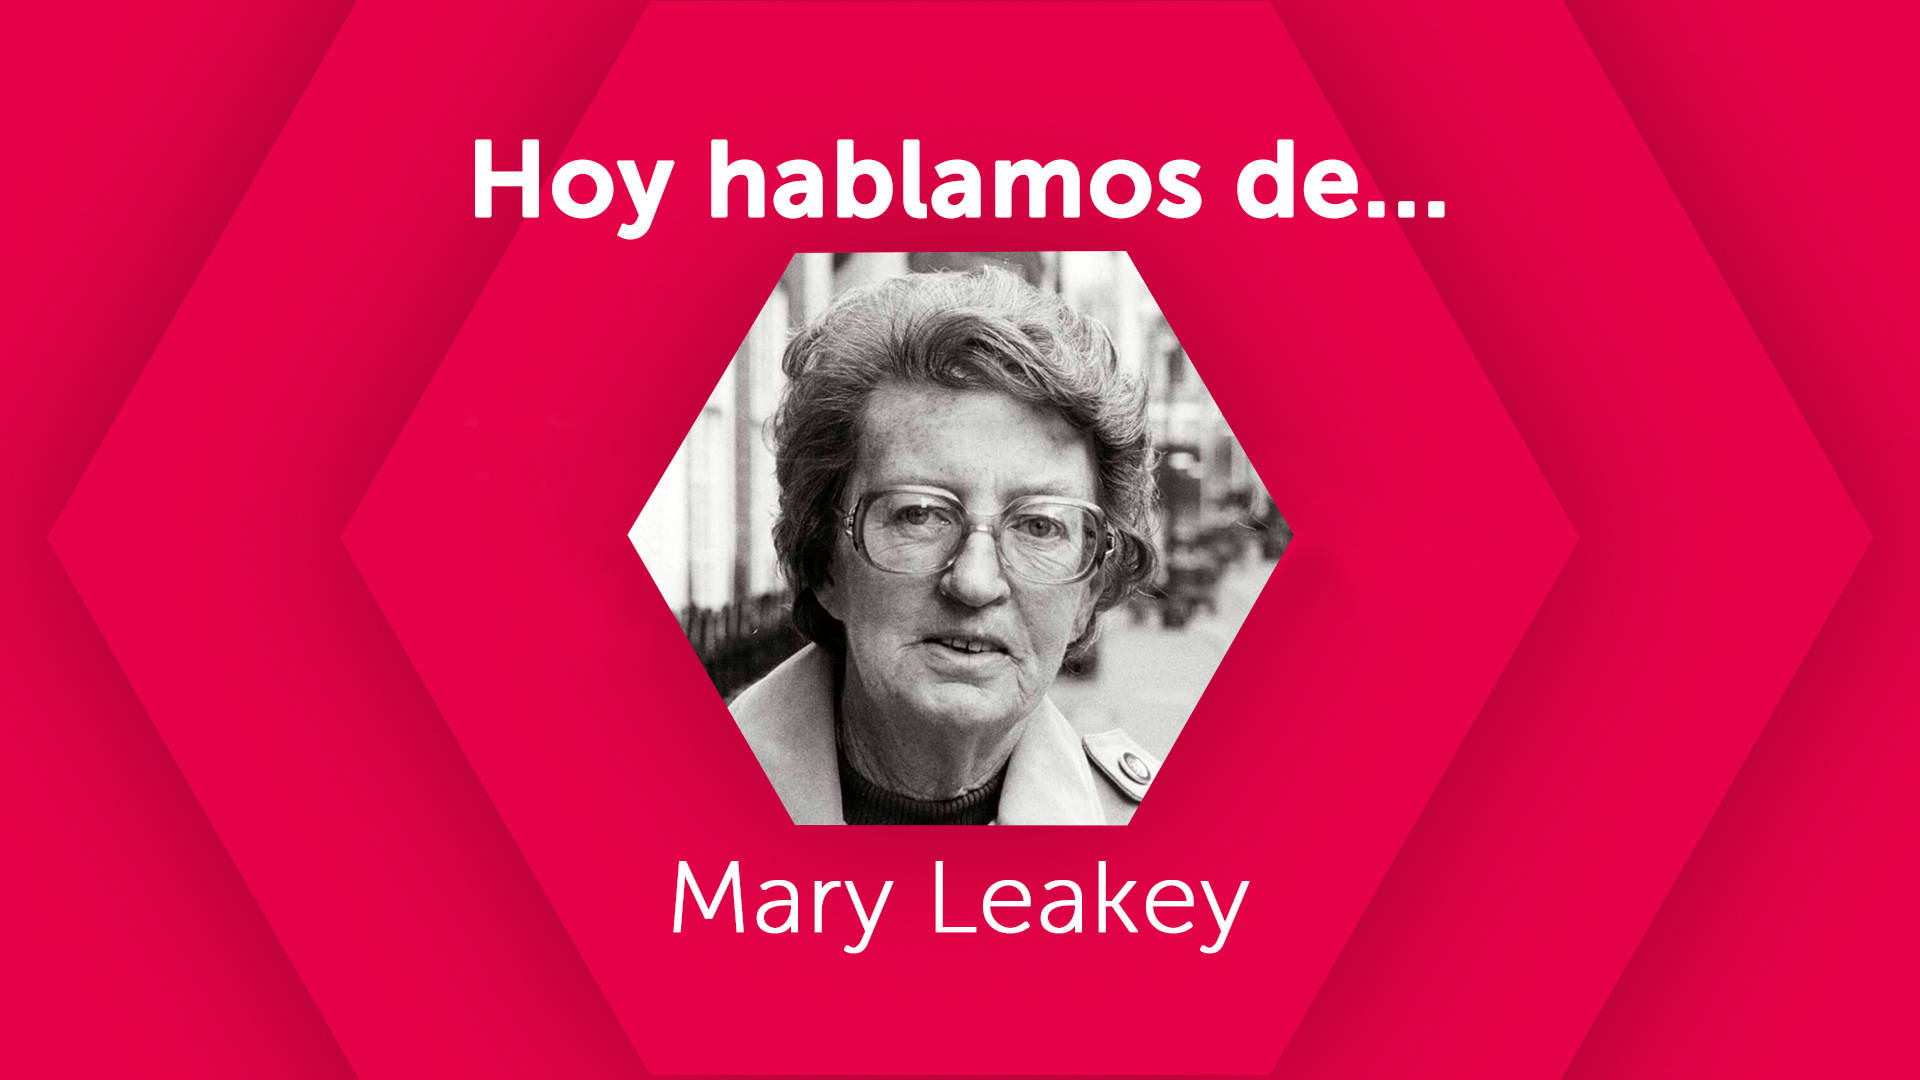 Hoy hablamos de Mary Leakey